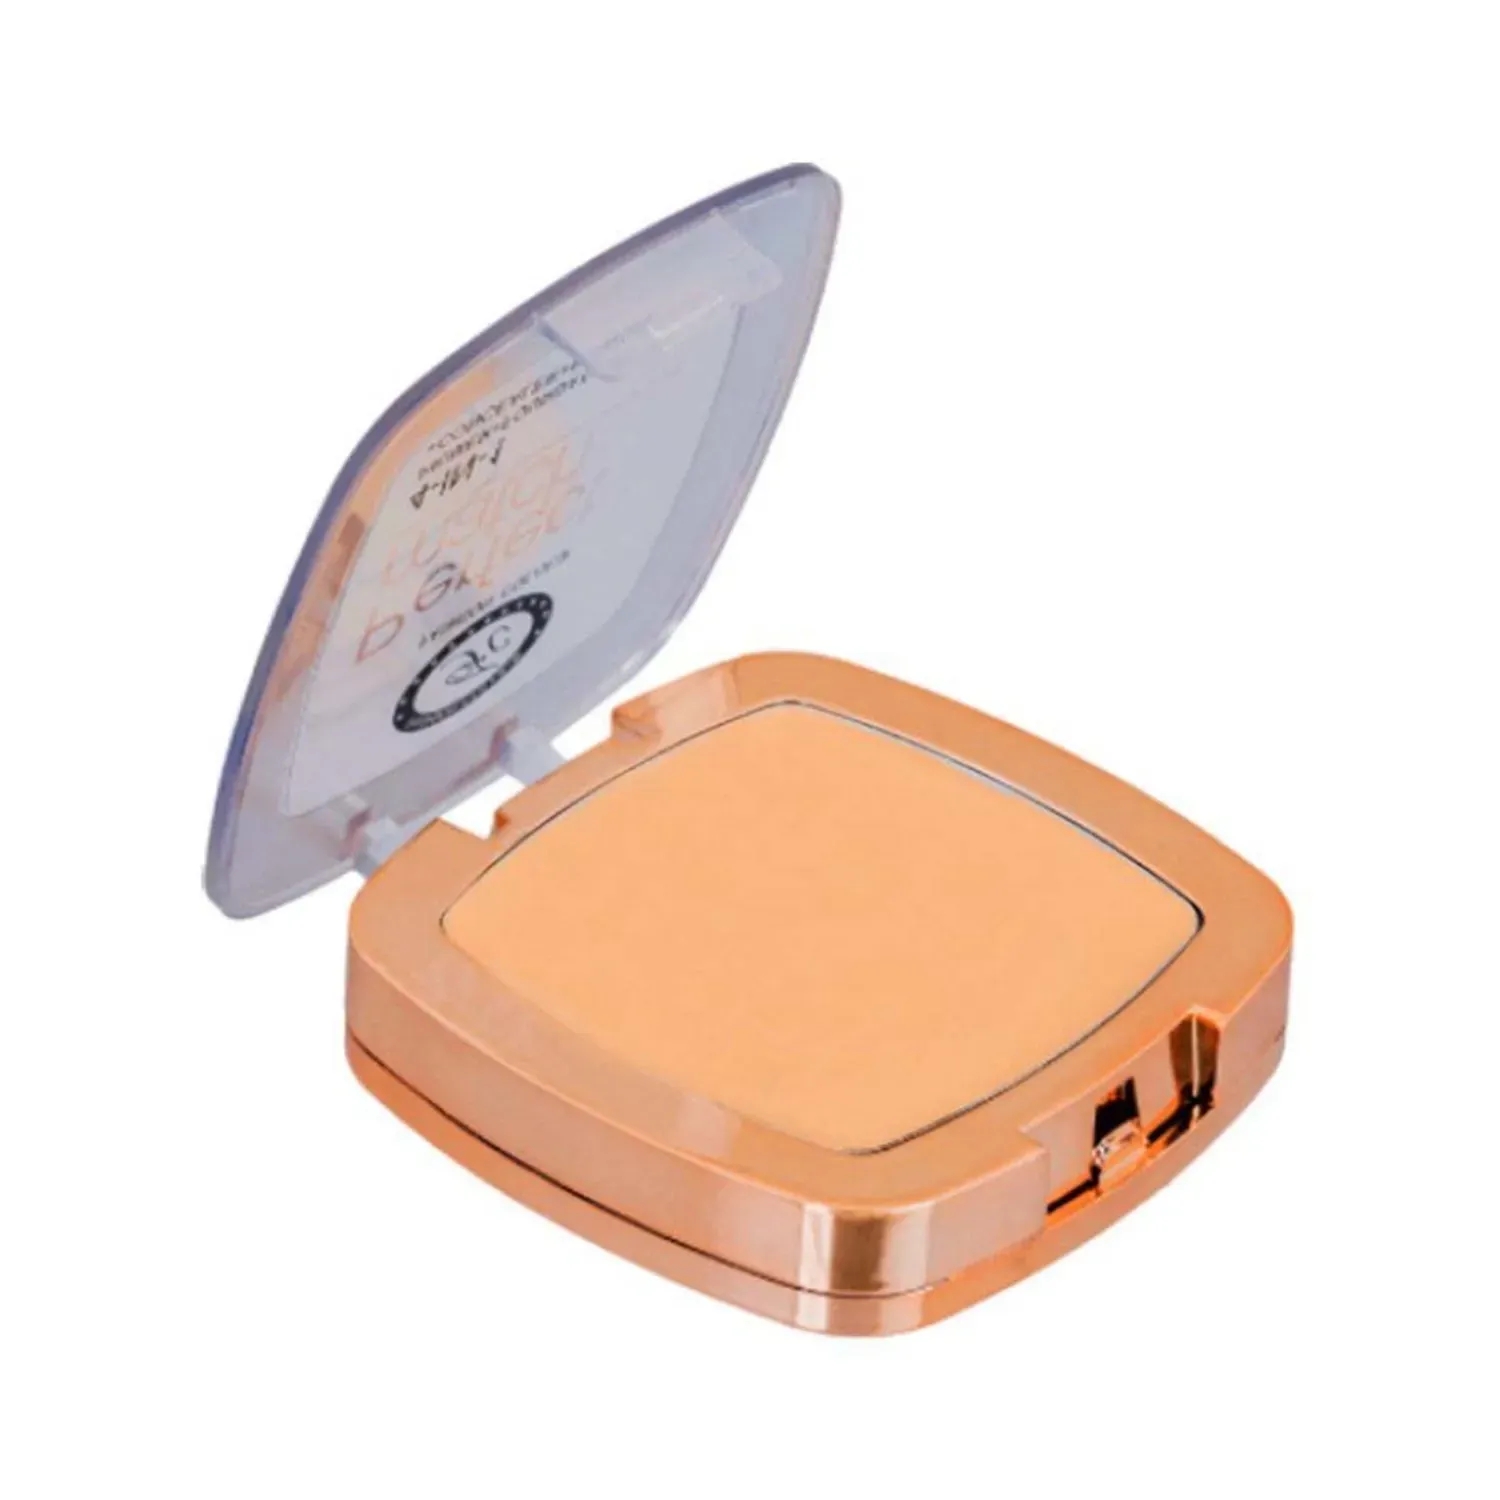 Fashion Colour | Fashion Colour 4-In-1 Perfect Match Compact Powder - 01 Shade (7g)